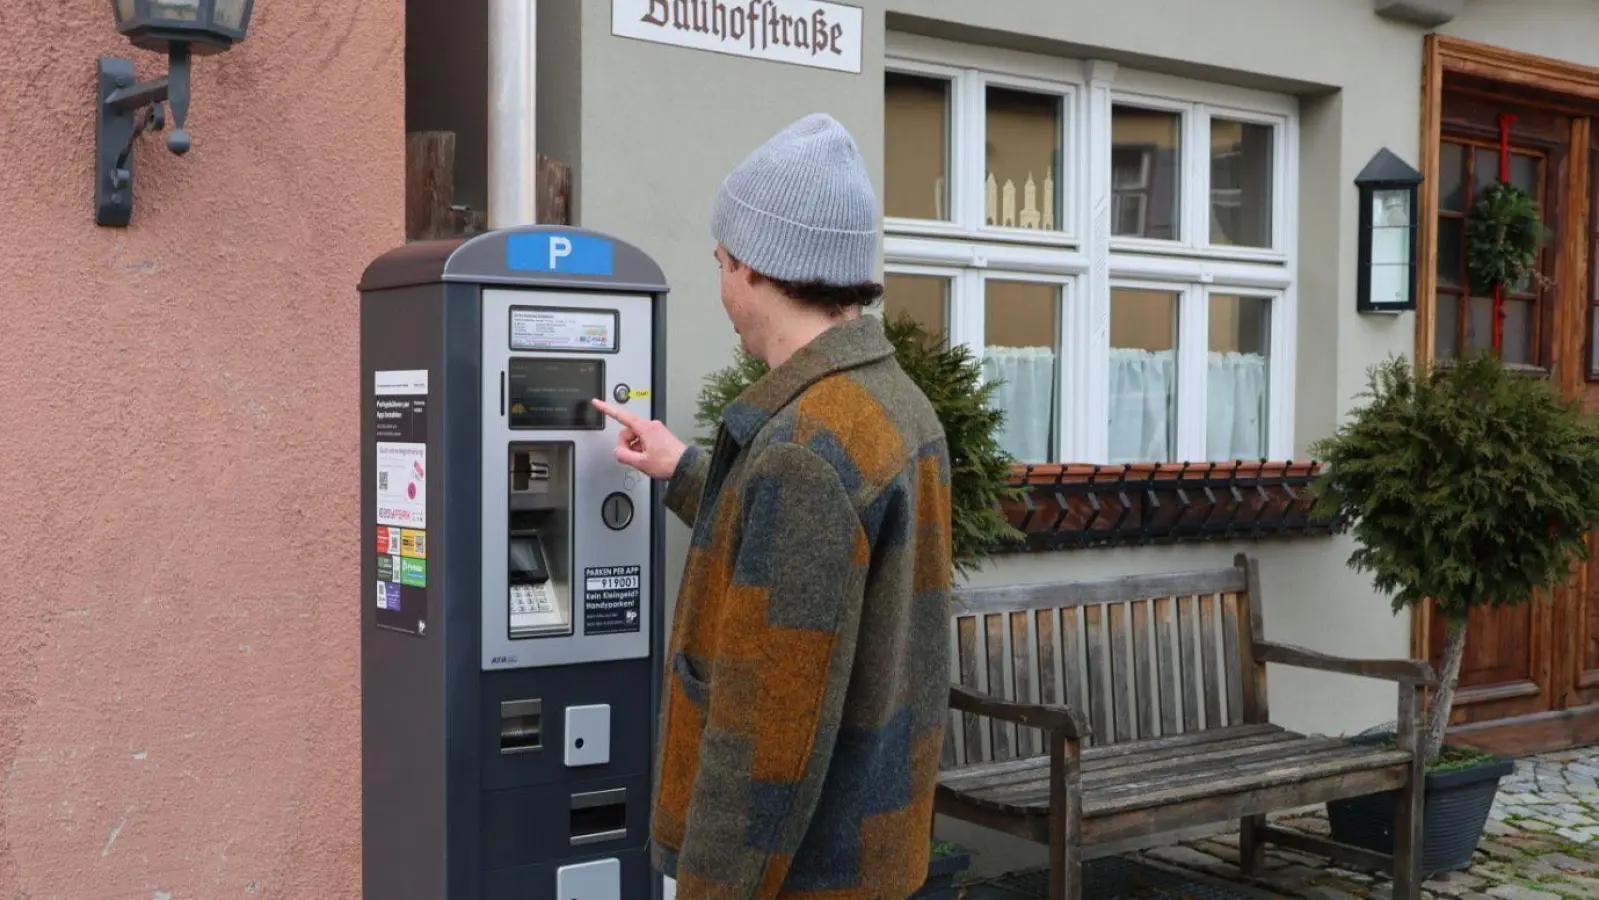 An die Bedienung der Parkautomaten in der Dinkelsbühler Altstadt haben sich die Menschen nach einem Jahr gewöhnt.  (Foto: Martina Haas)